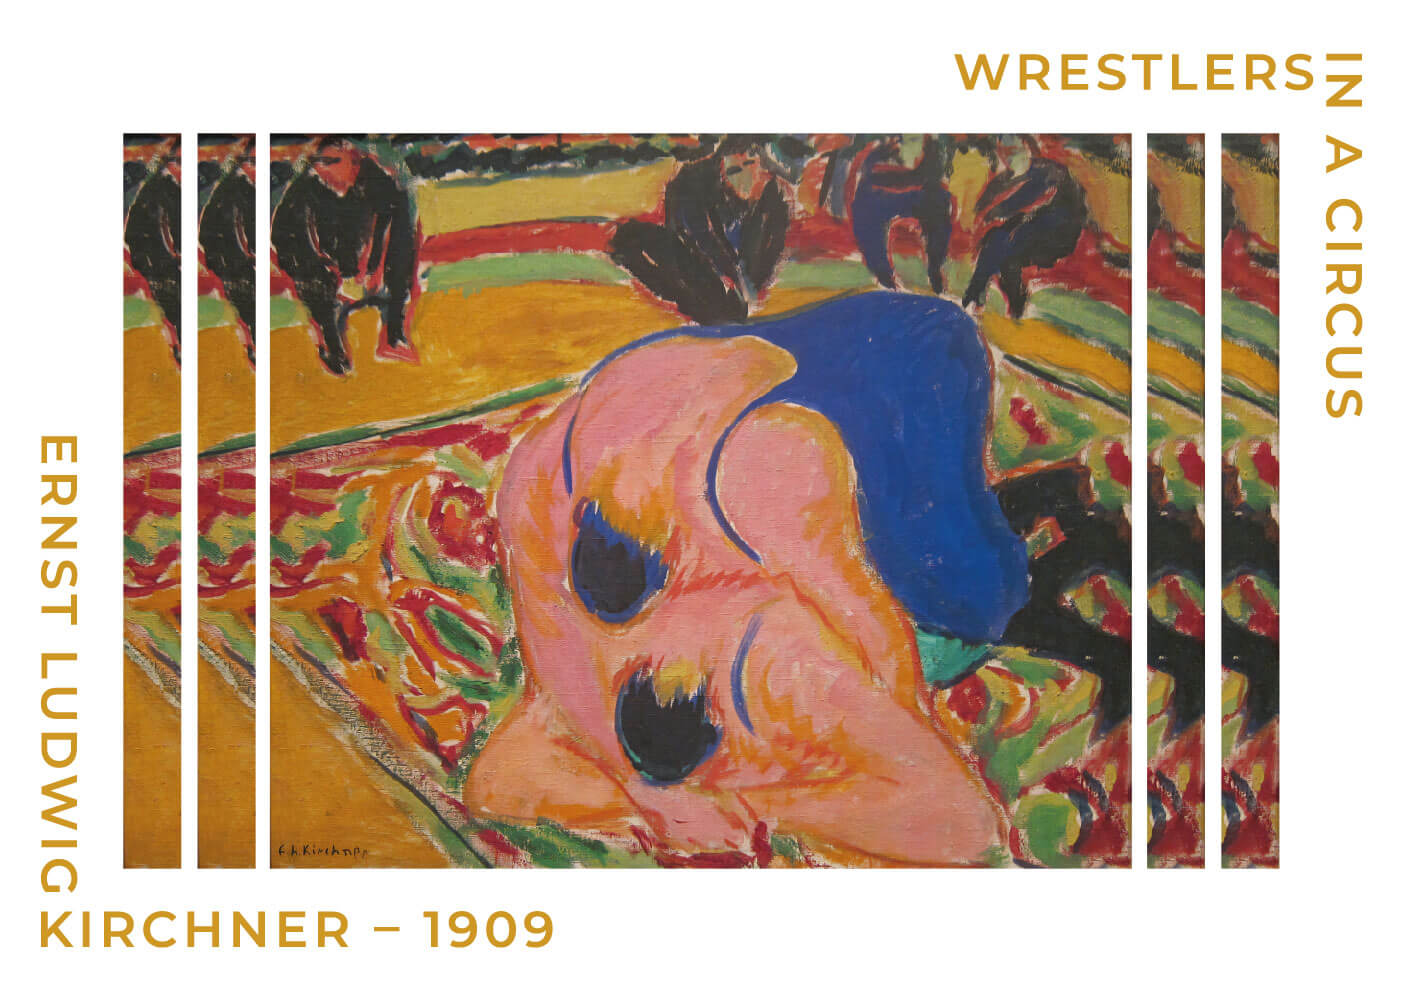 Billede af Wrestlers in a circus - Ernst L. Kirchner museumsplakat